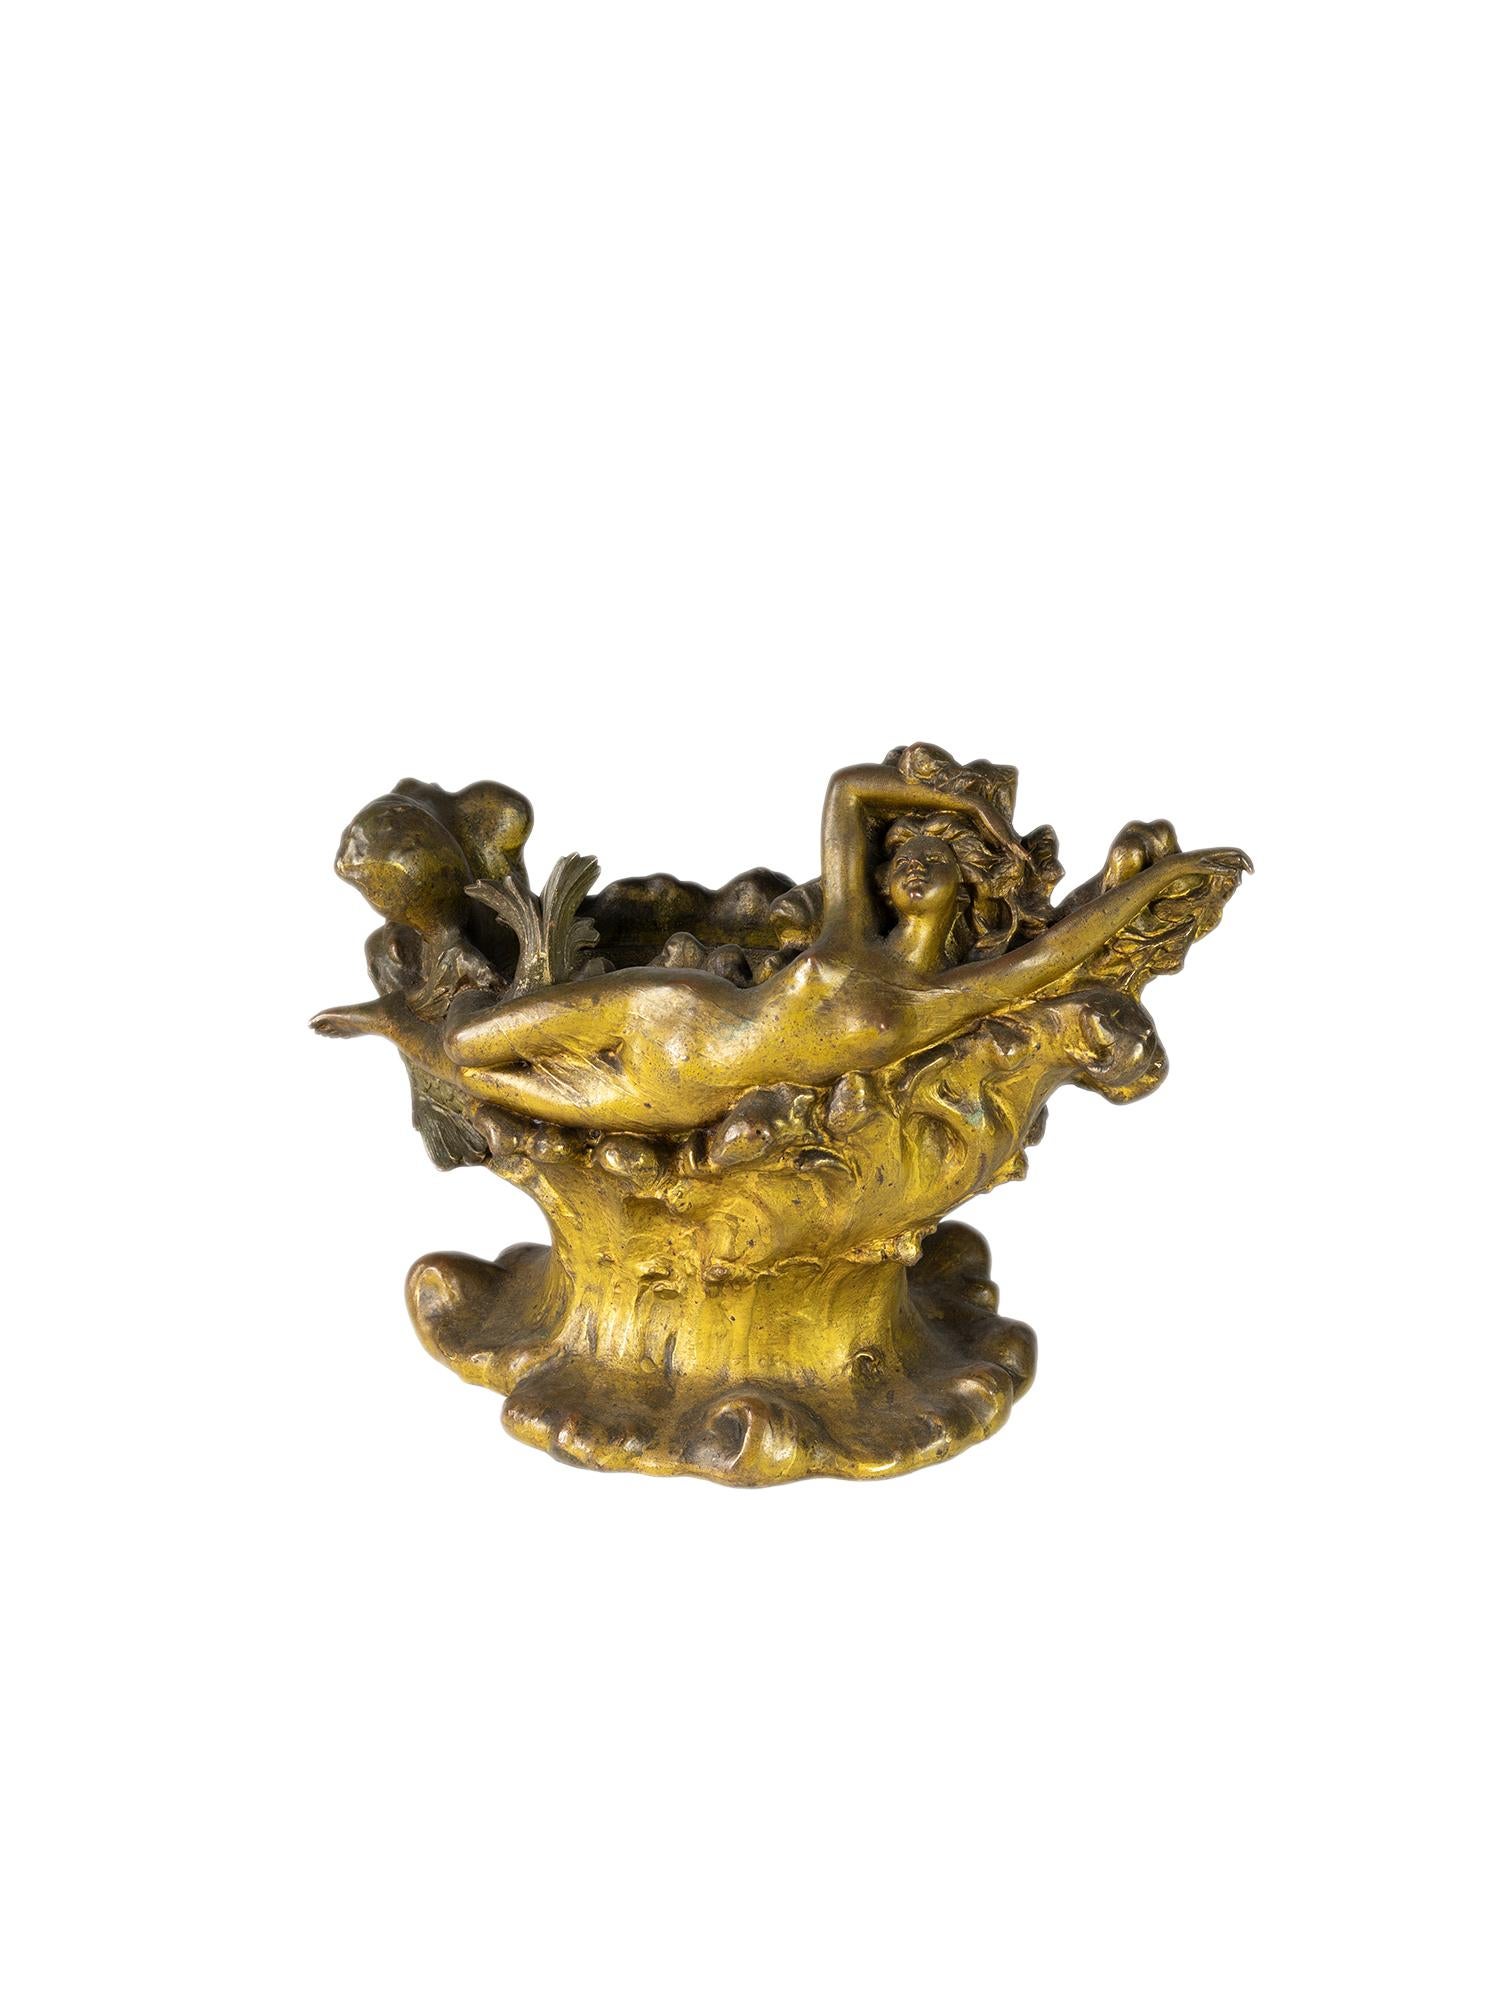 Eine sehr eigentümliche Vase aus vergoldetem Metall mit einer reich verzierten liegenden Frauenfigur.
